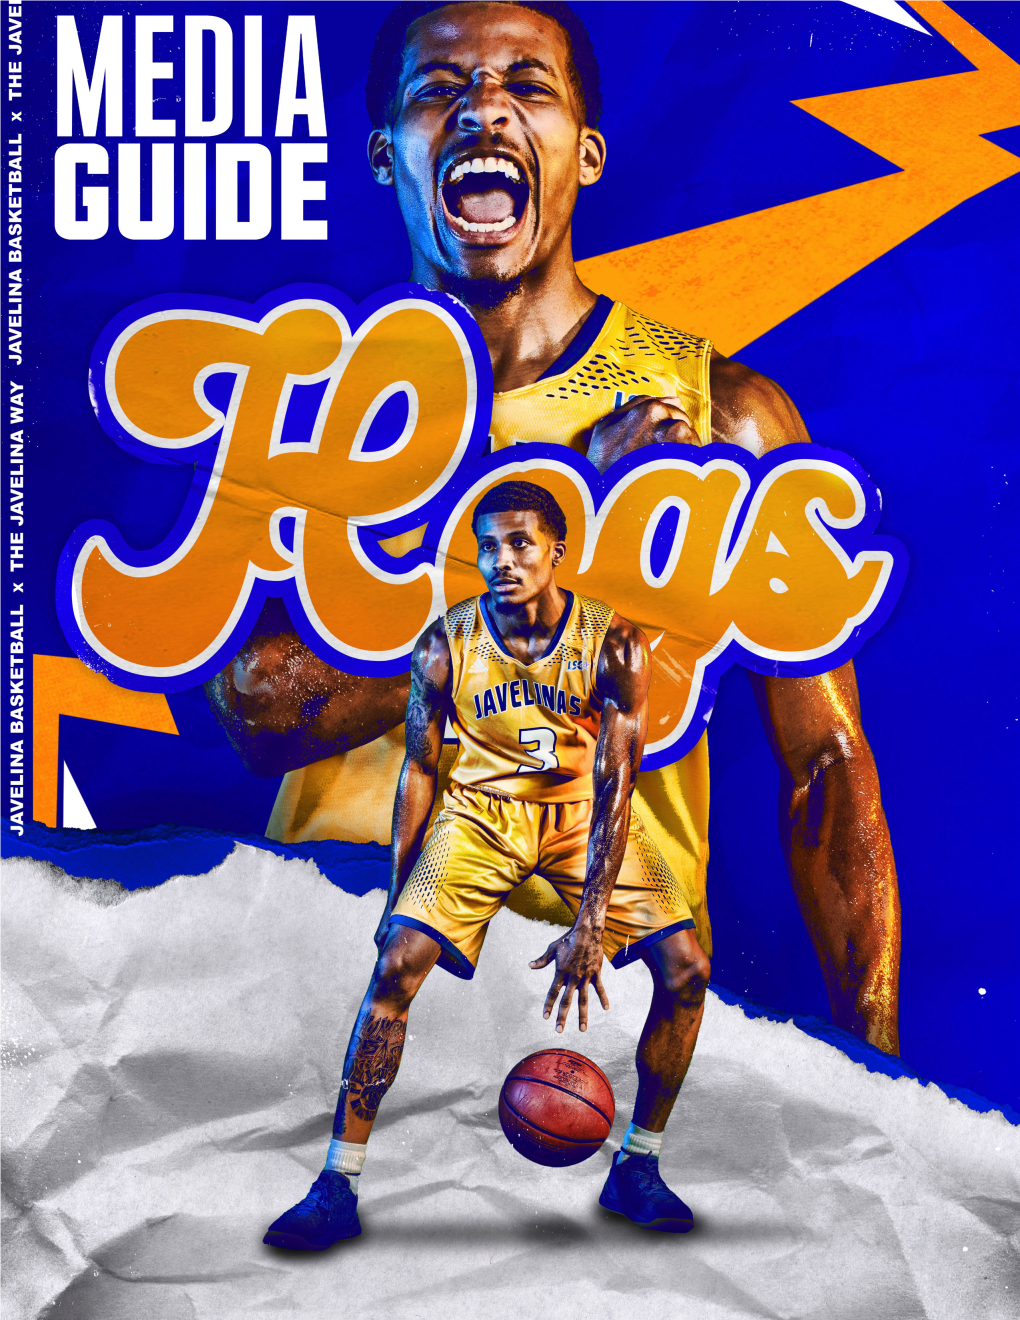 2019-20 @Javelinambb Media Guide 2019-20 @Javelinambb Media Guide